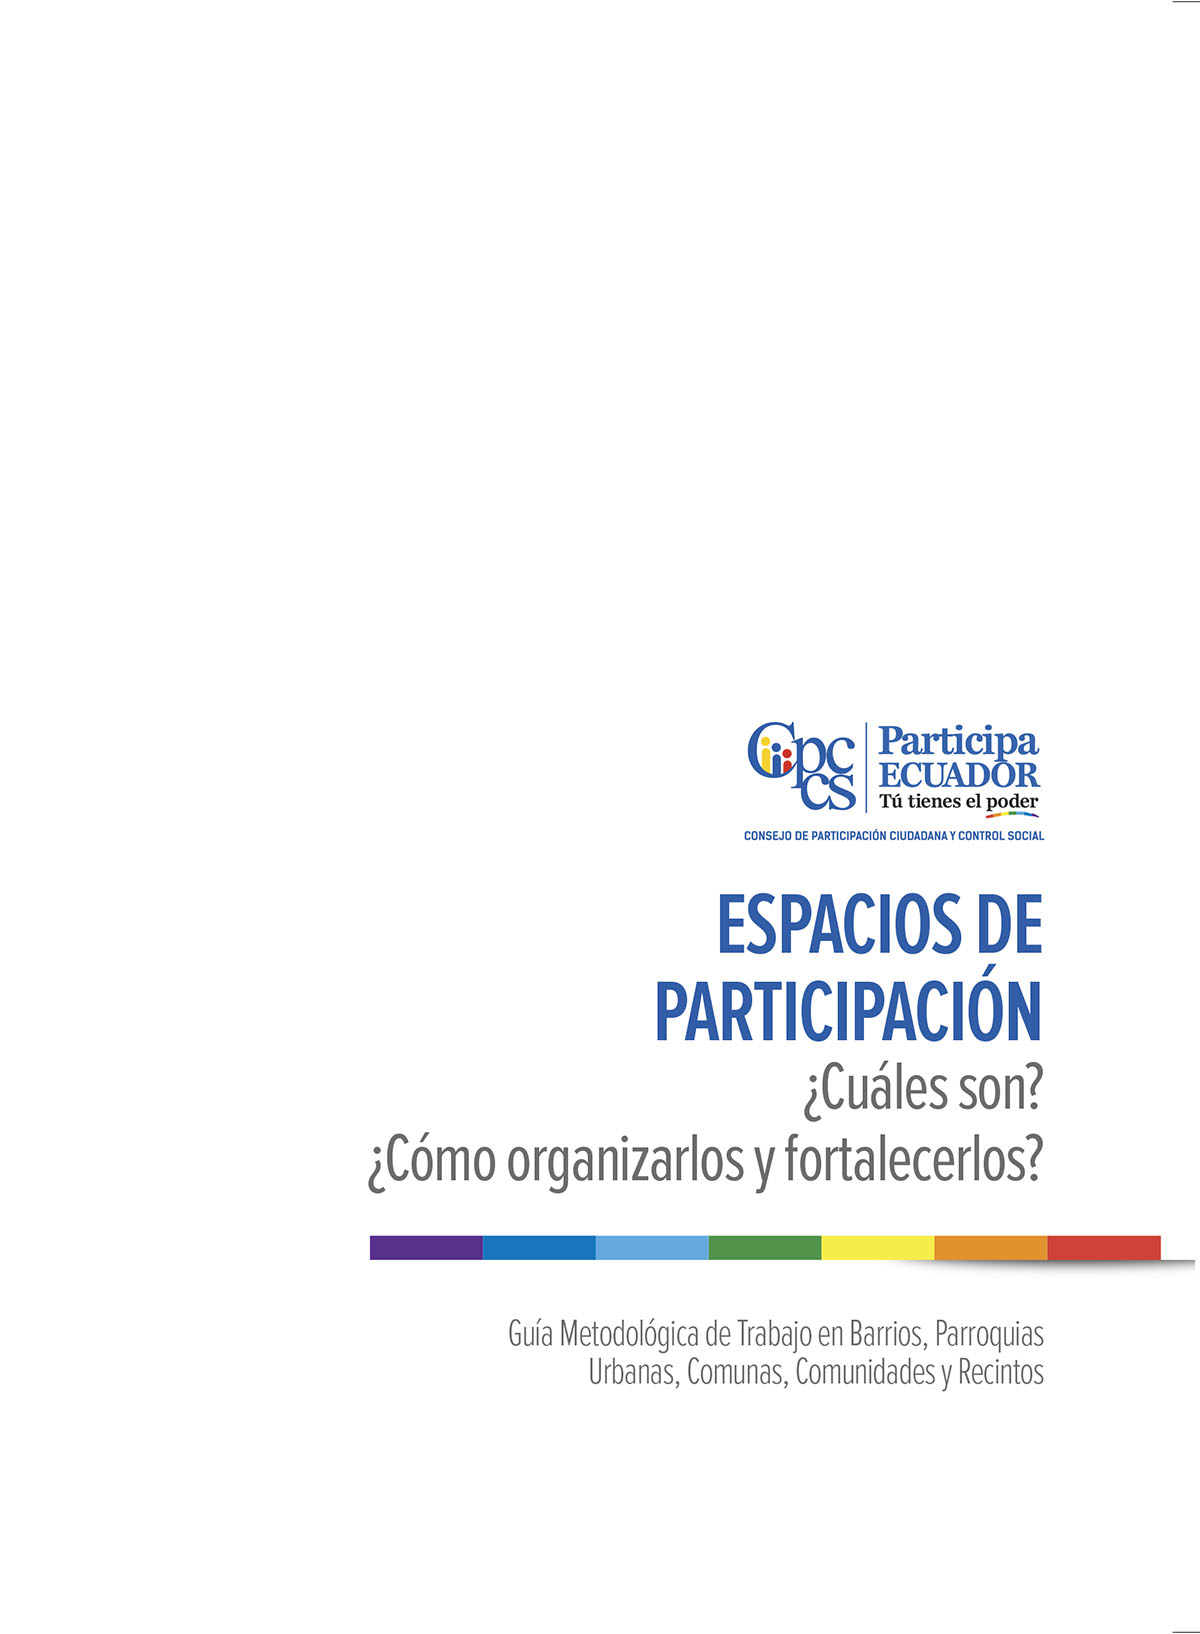 Espacios de participación ¿cuáles son? ¿cómo organizarlos y fortalecerlos?: guía metodológica de trabajo en barrios, parroquias urbanas, comunas, comunidades y recintos<br/>Quito: GIZ - Programa Fortalecimiento del Buen Gobierno. 2017. 35 páginas 